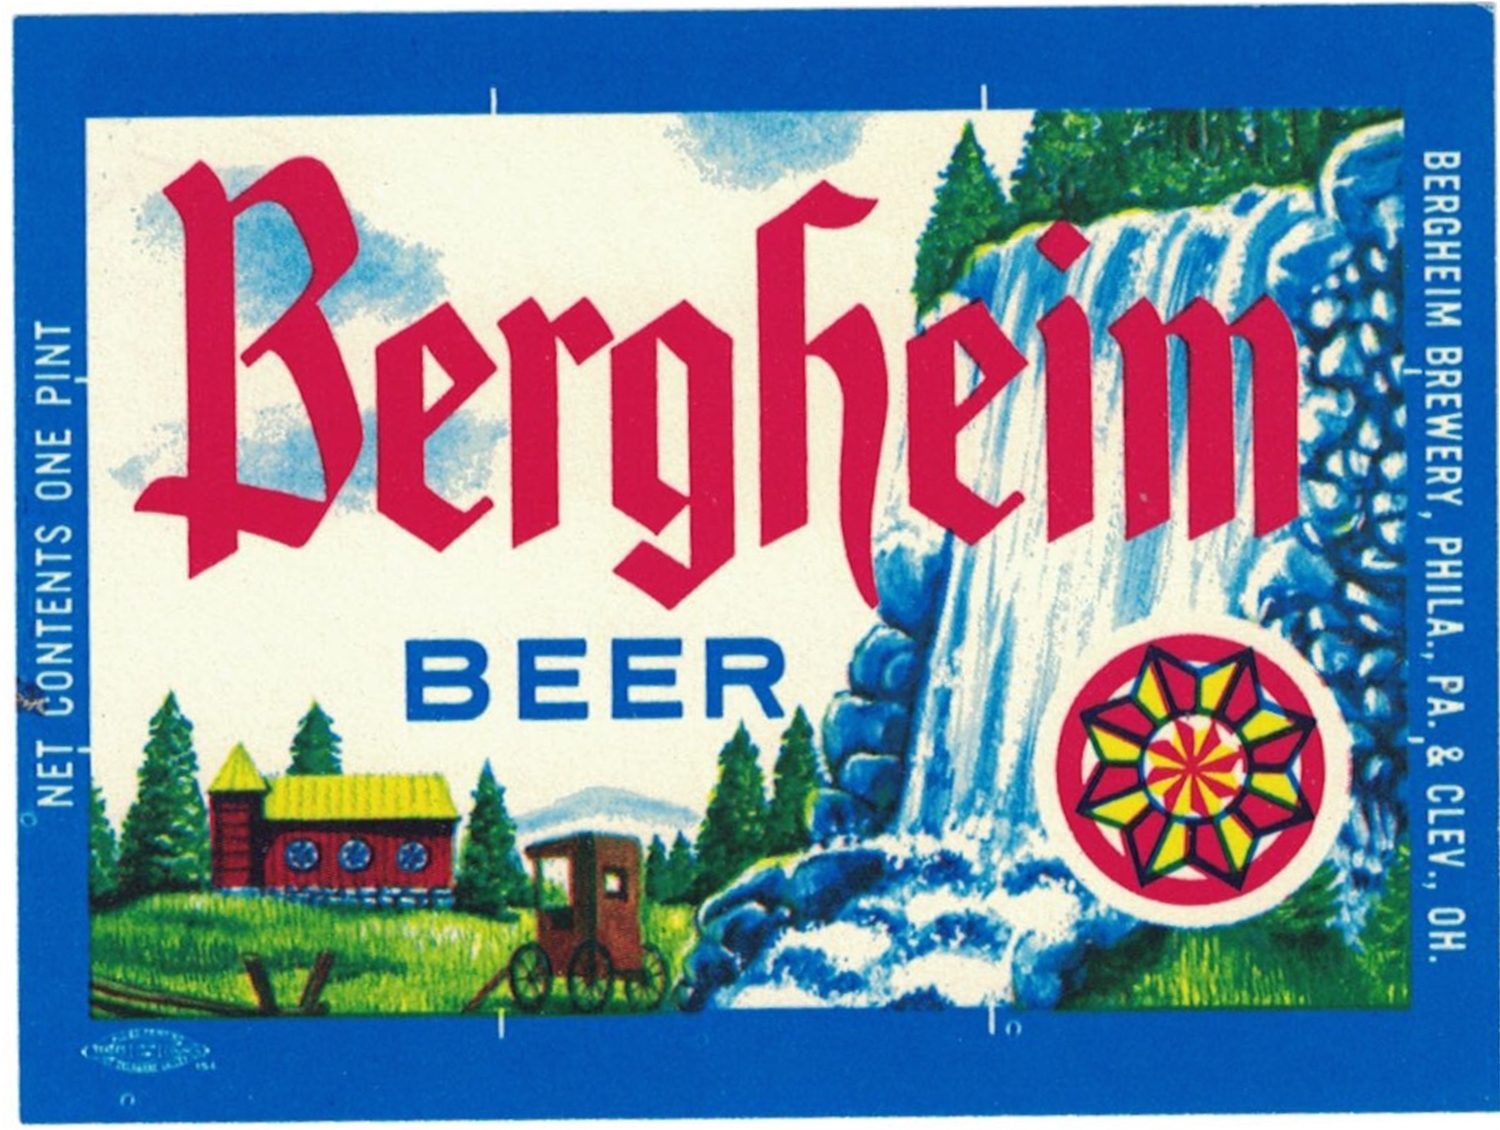 Bergheim Beer Label